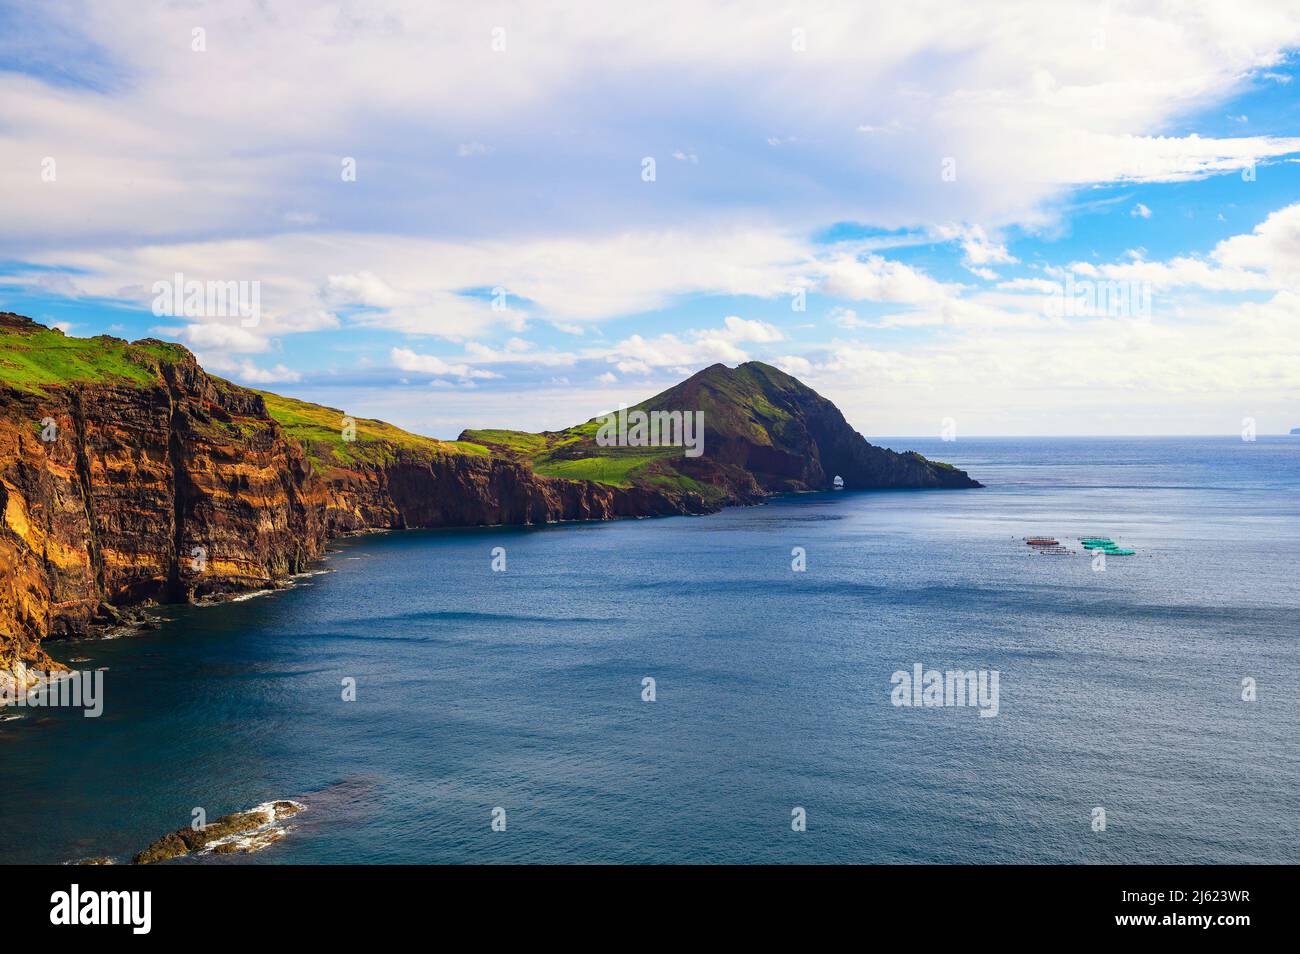 Ponta de Sao Lourenco peninsula, Madeira Islands, Portugal Stock Photo